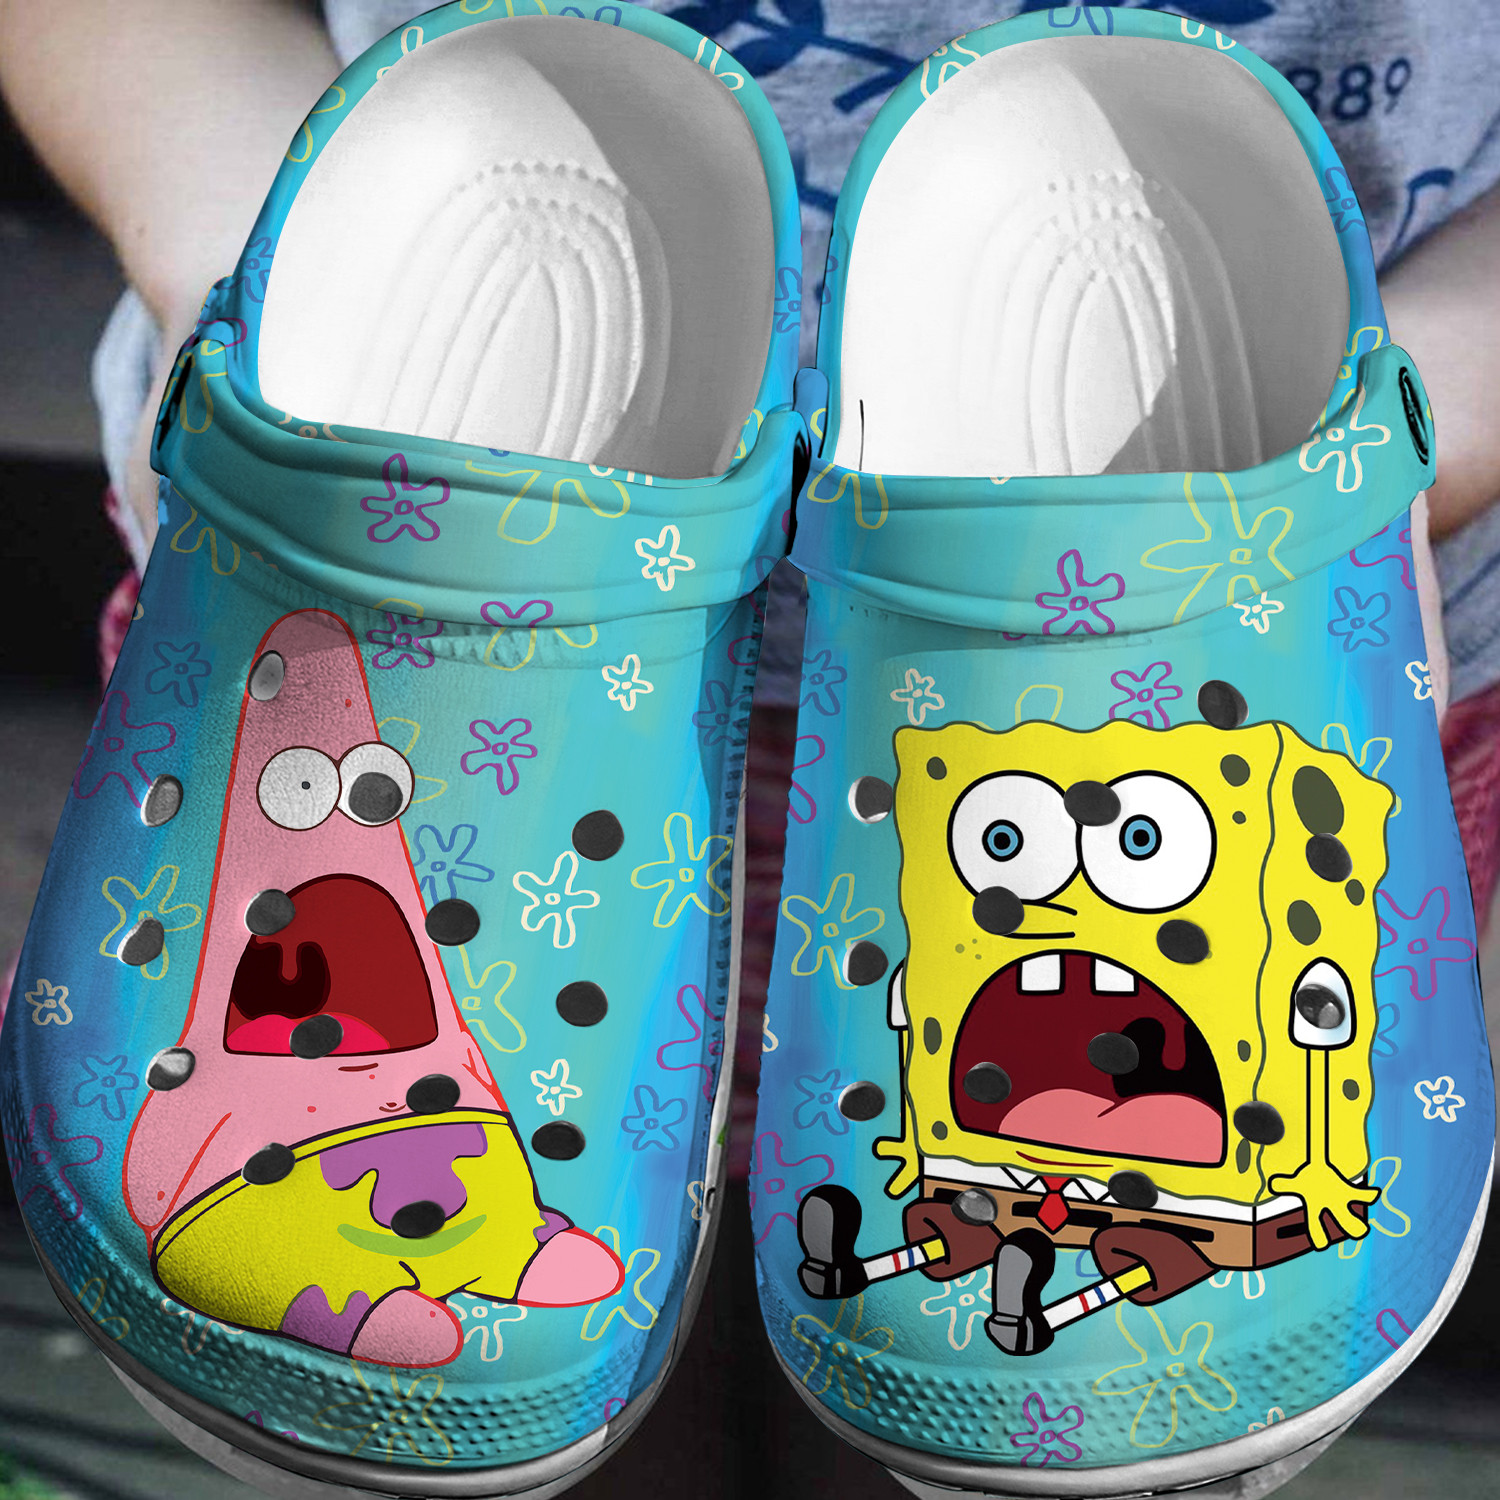 Spongebob Patrick Crocs 3D Clog Shoes